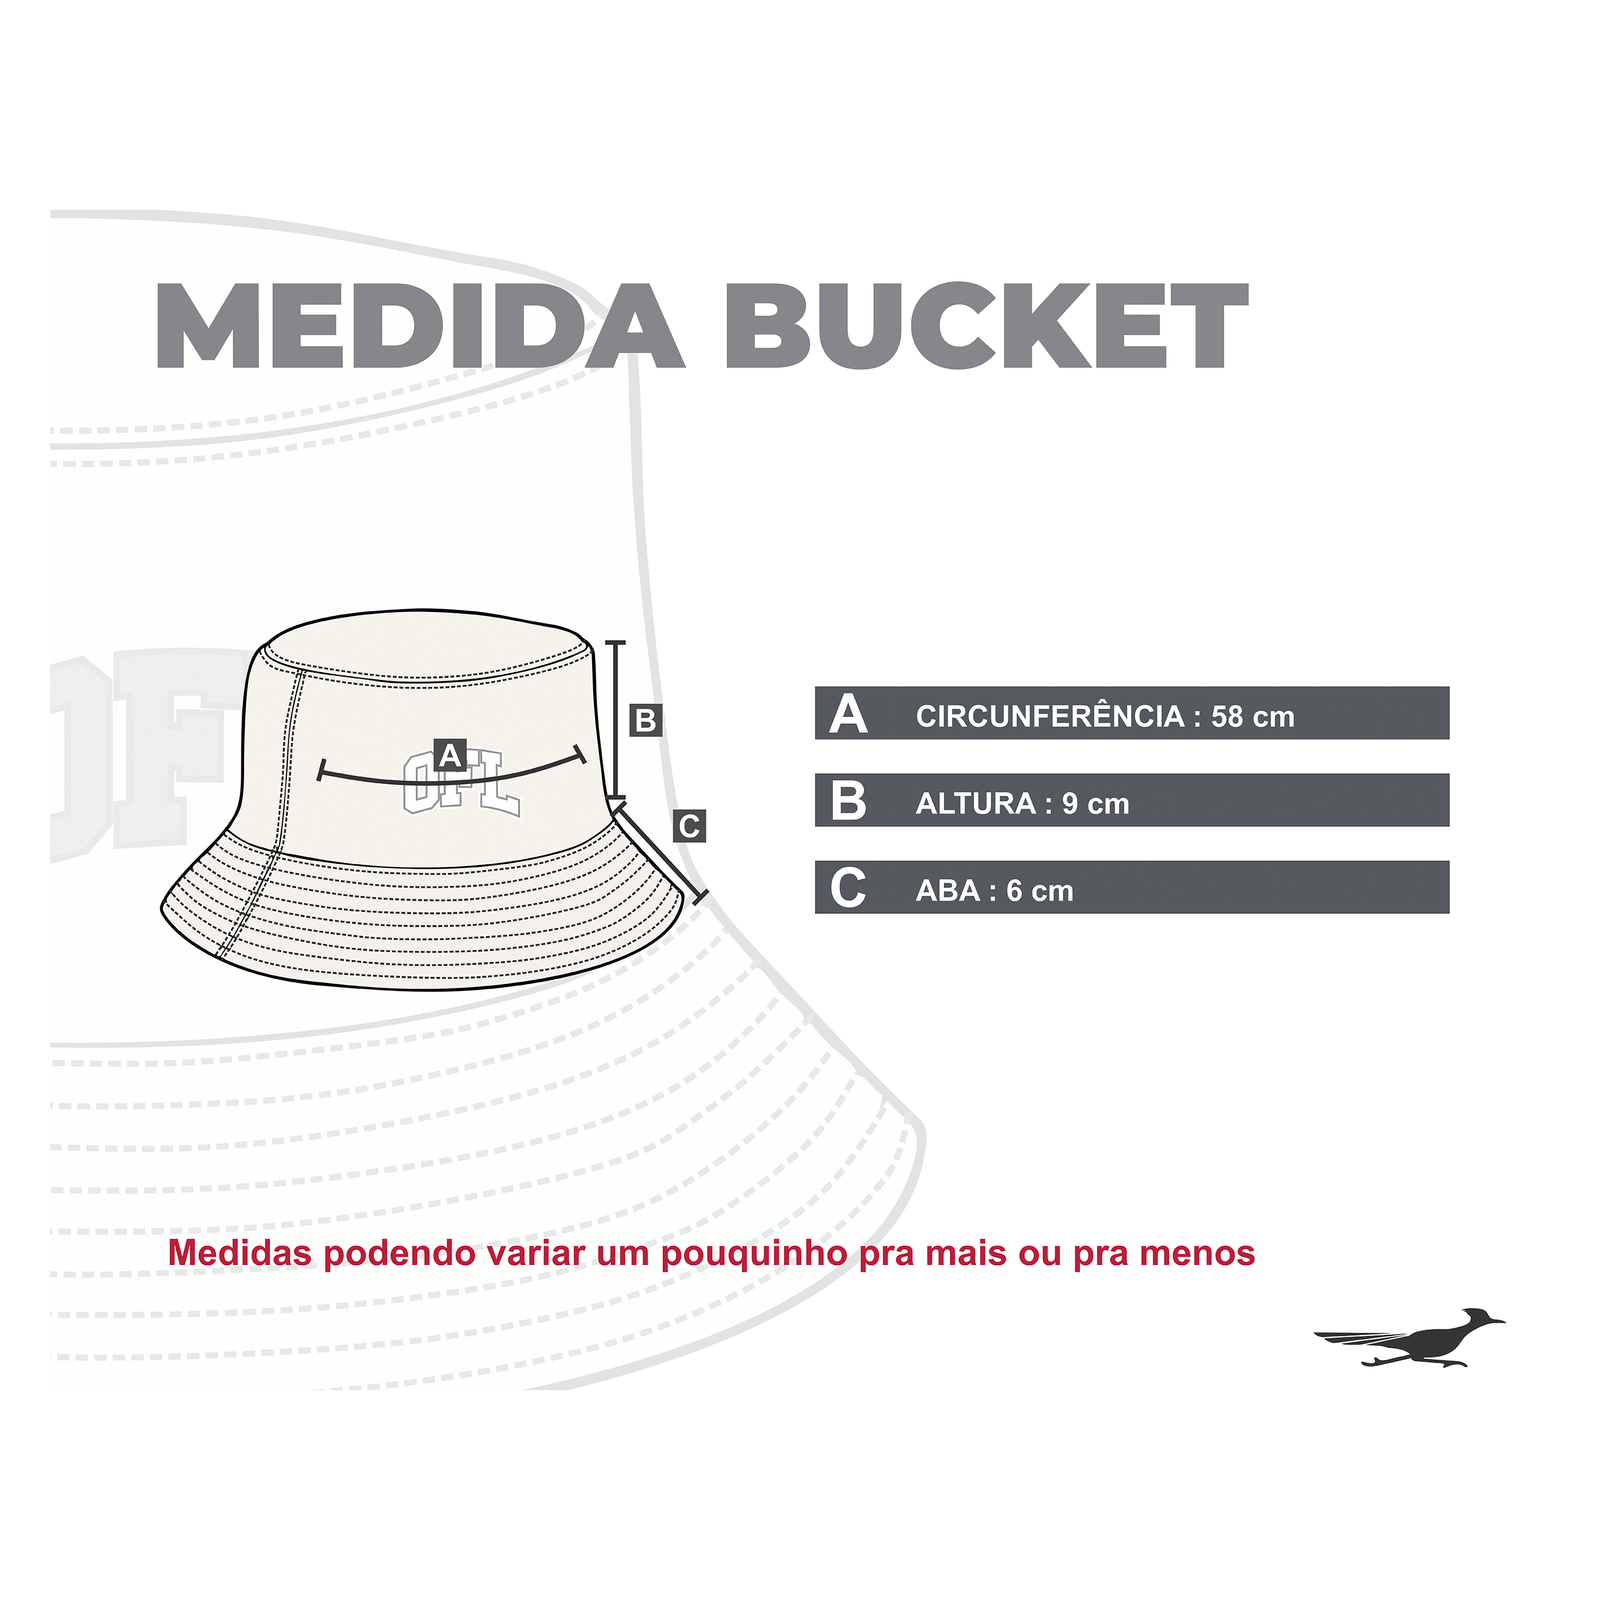 MEIDDA-BUCKET